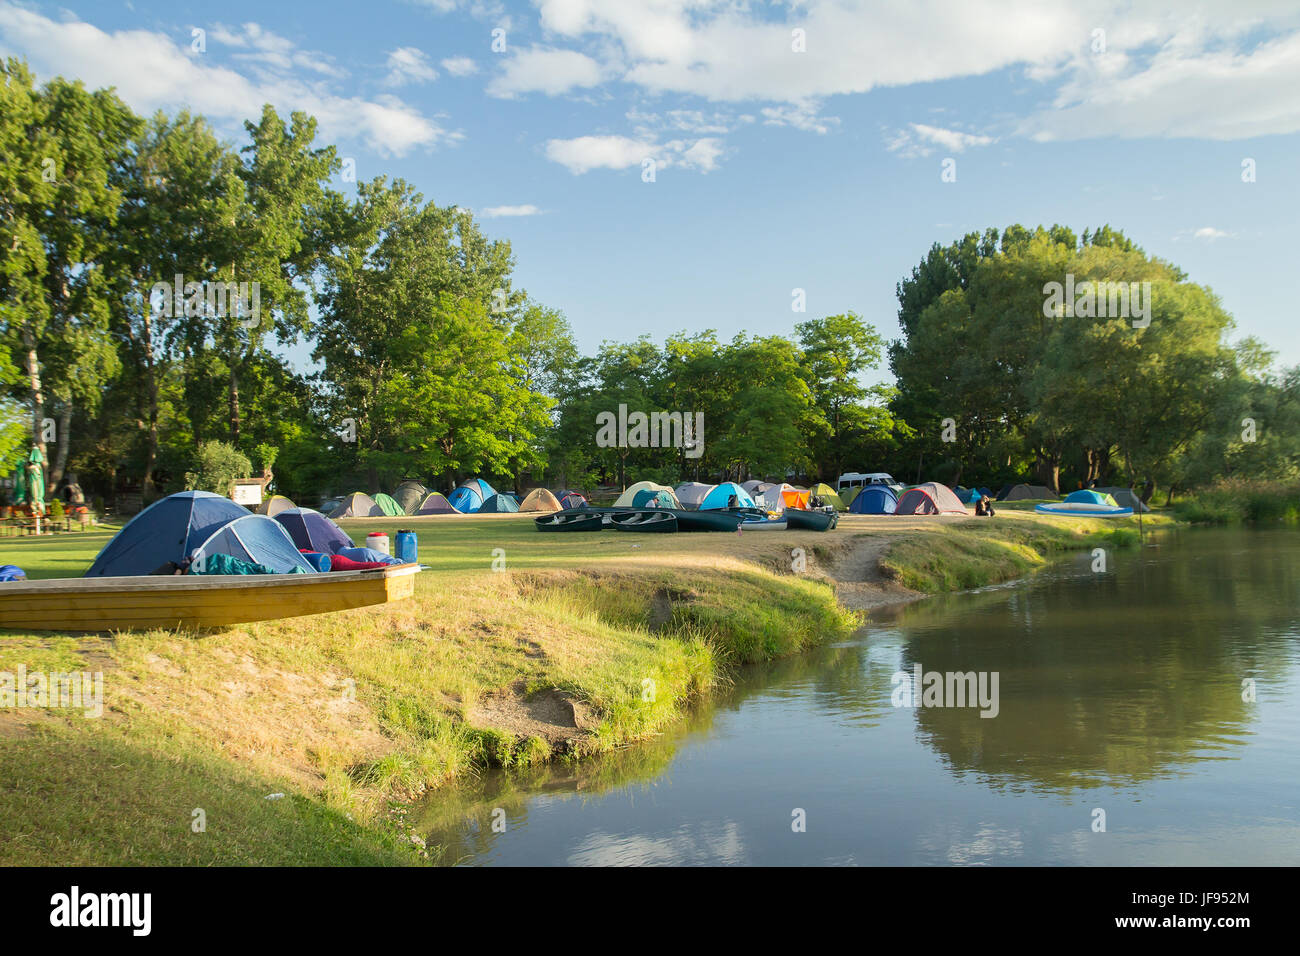 Campingplatz mit Zelten in der Nähe von Fluss Stockfoto